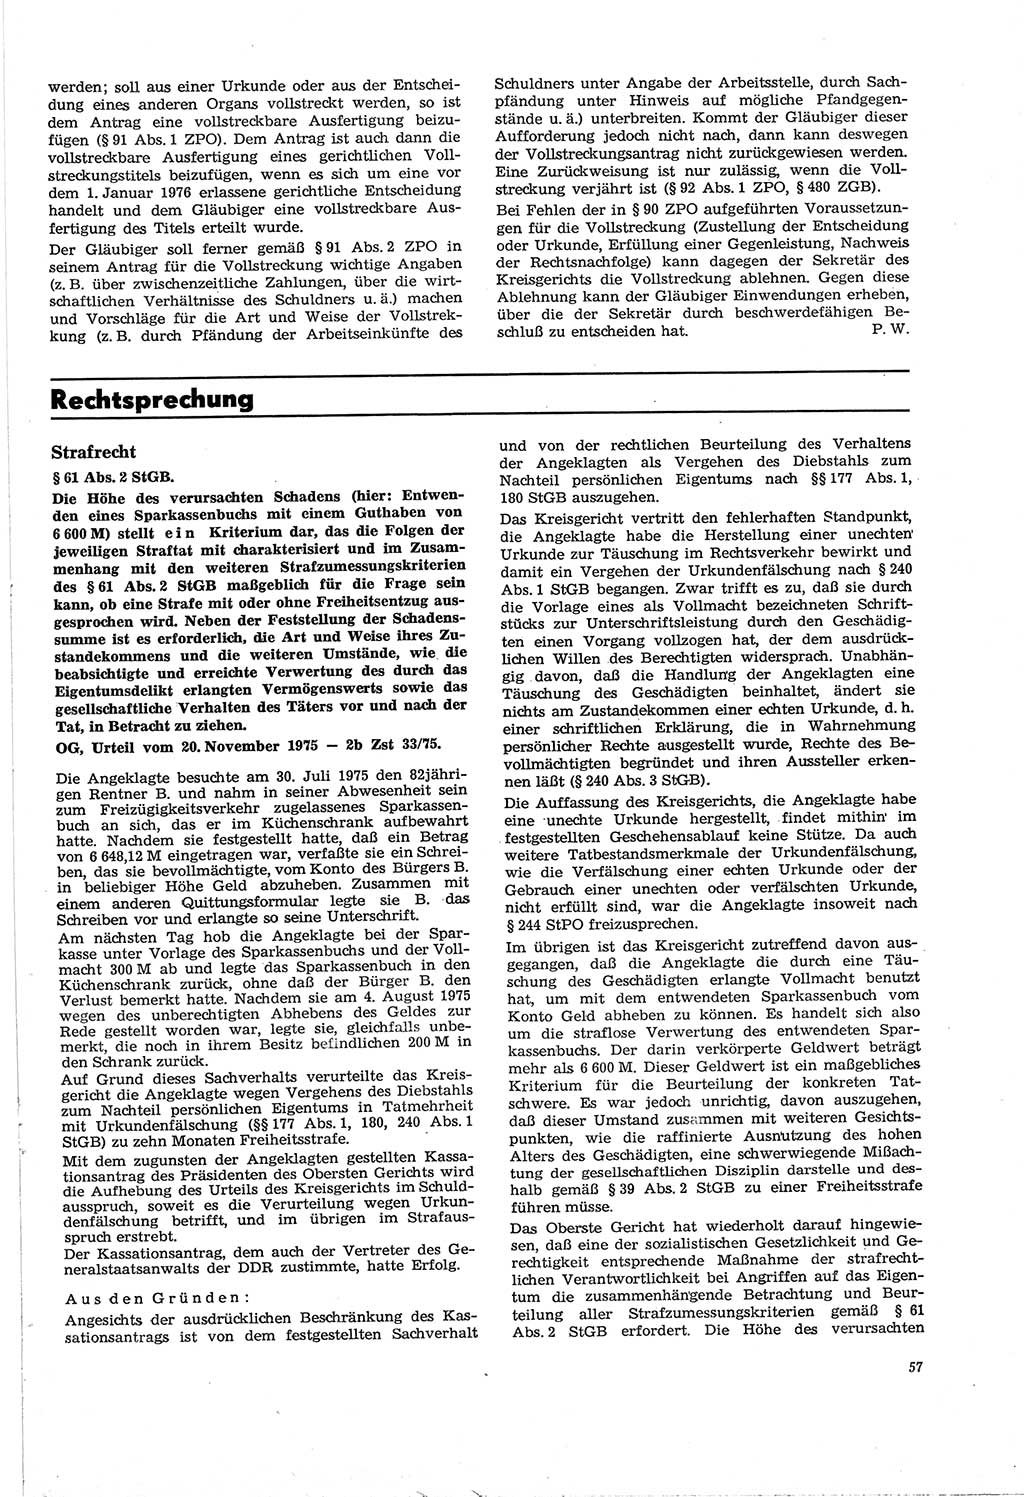 Neue Justiz (NJ), Zeitschrift für Recht und Rechtswissenschaft [Deutsche Demokratische Republik (DDR)], 30. Jahrgang 1976, Seite 57 (NJ DDR 1976, S. 57)